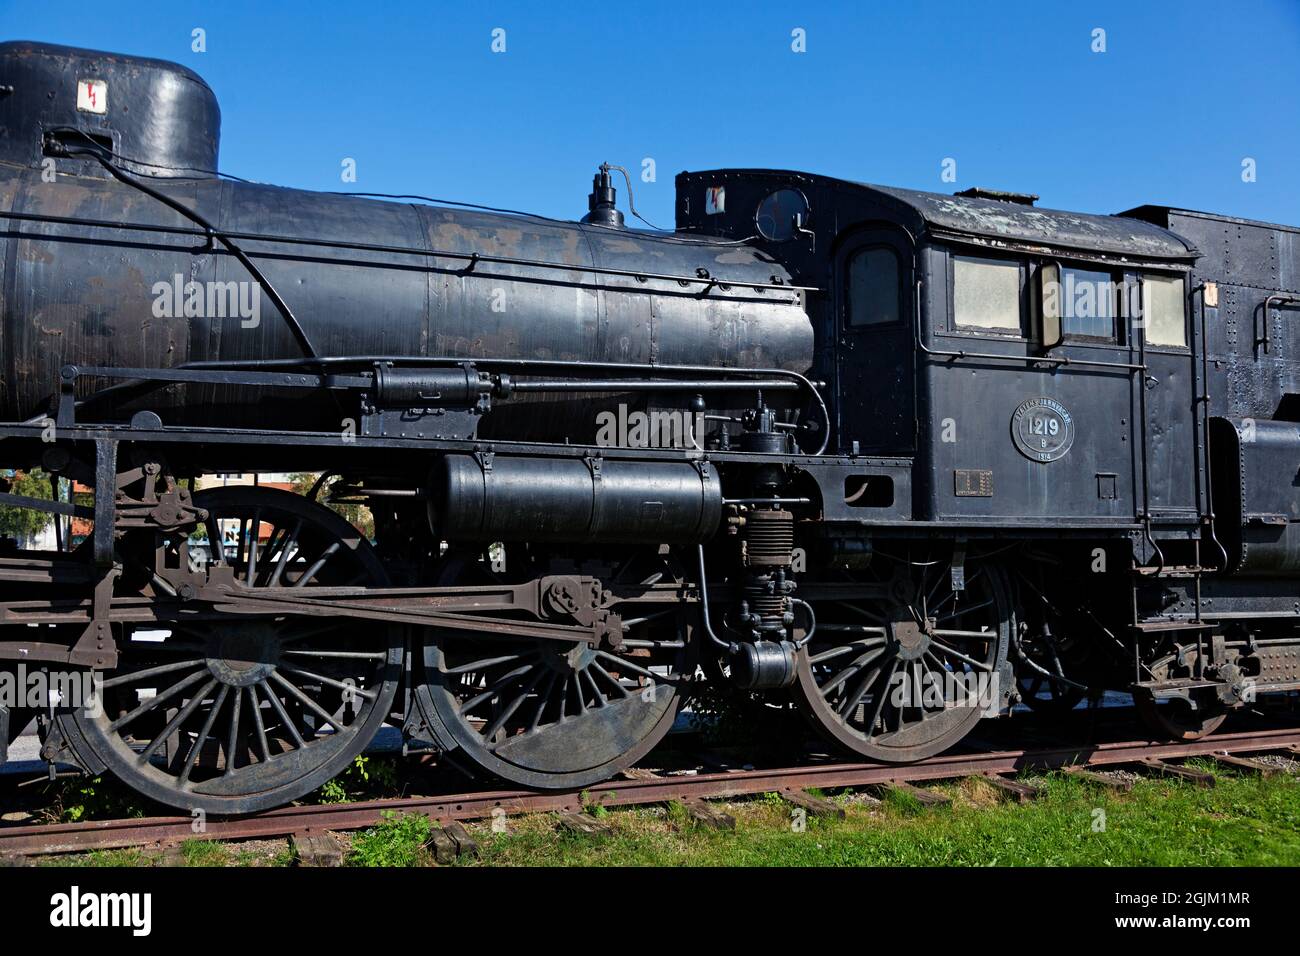 Vannas, Norrland Sweden - August 13, 2021: an old black steam locomotive Stock Photo